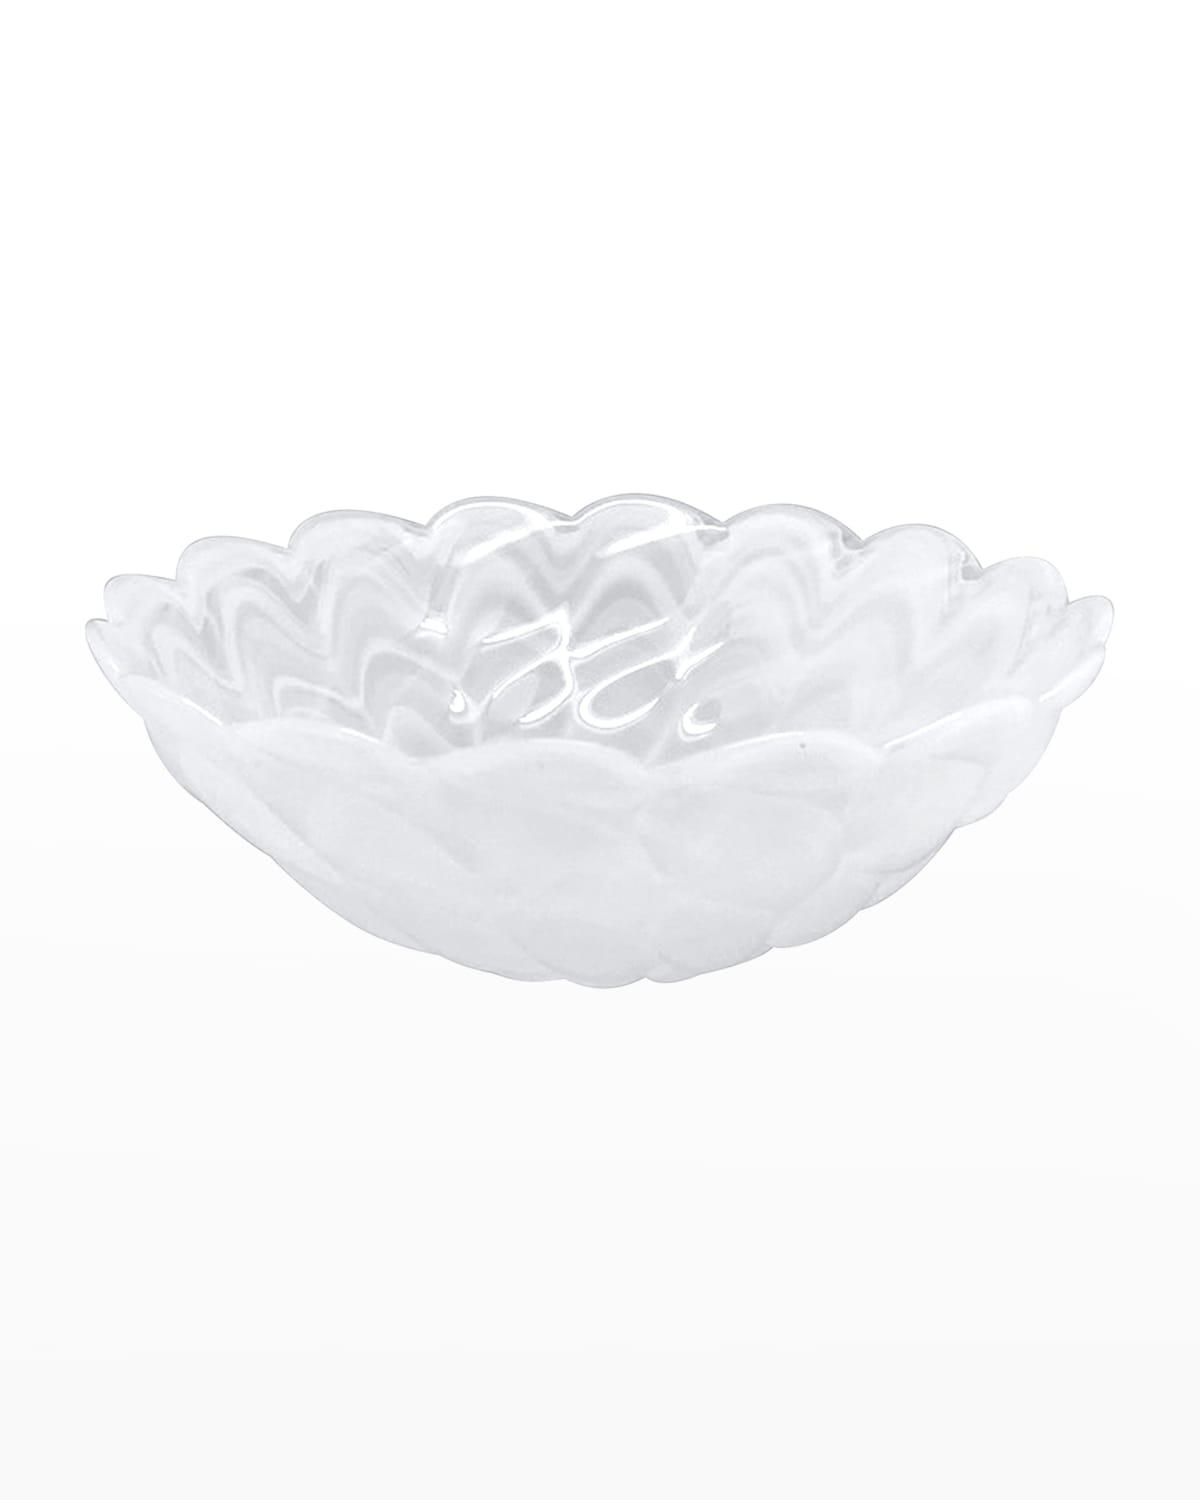 Mariposa Small Scallop Rim Bowl, Alabaster White